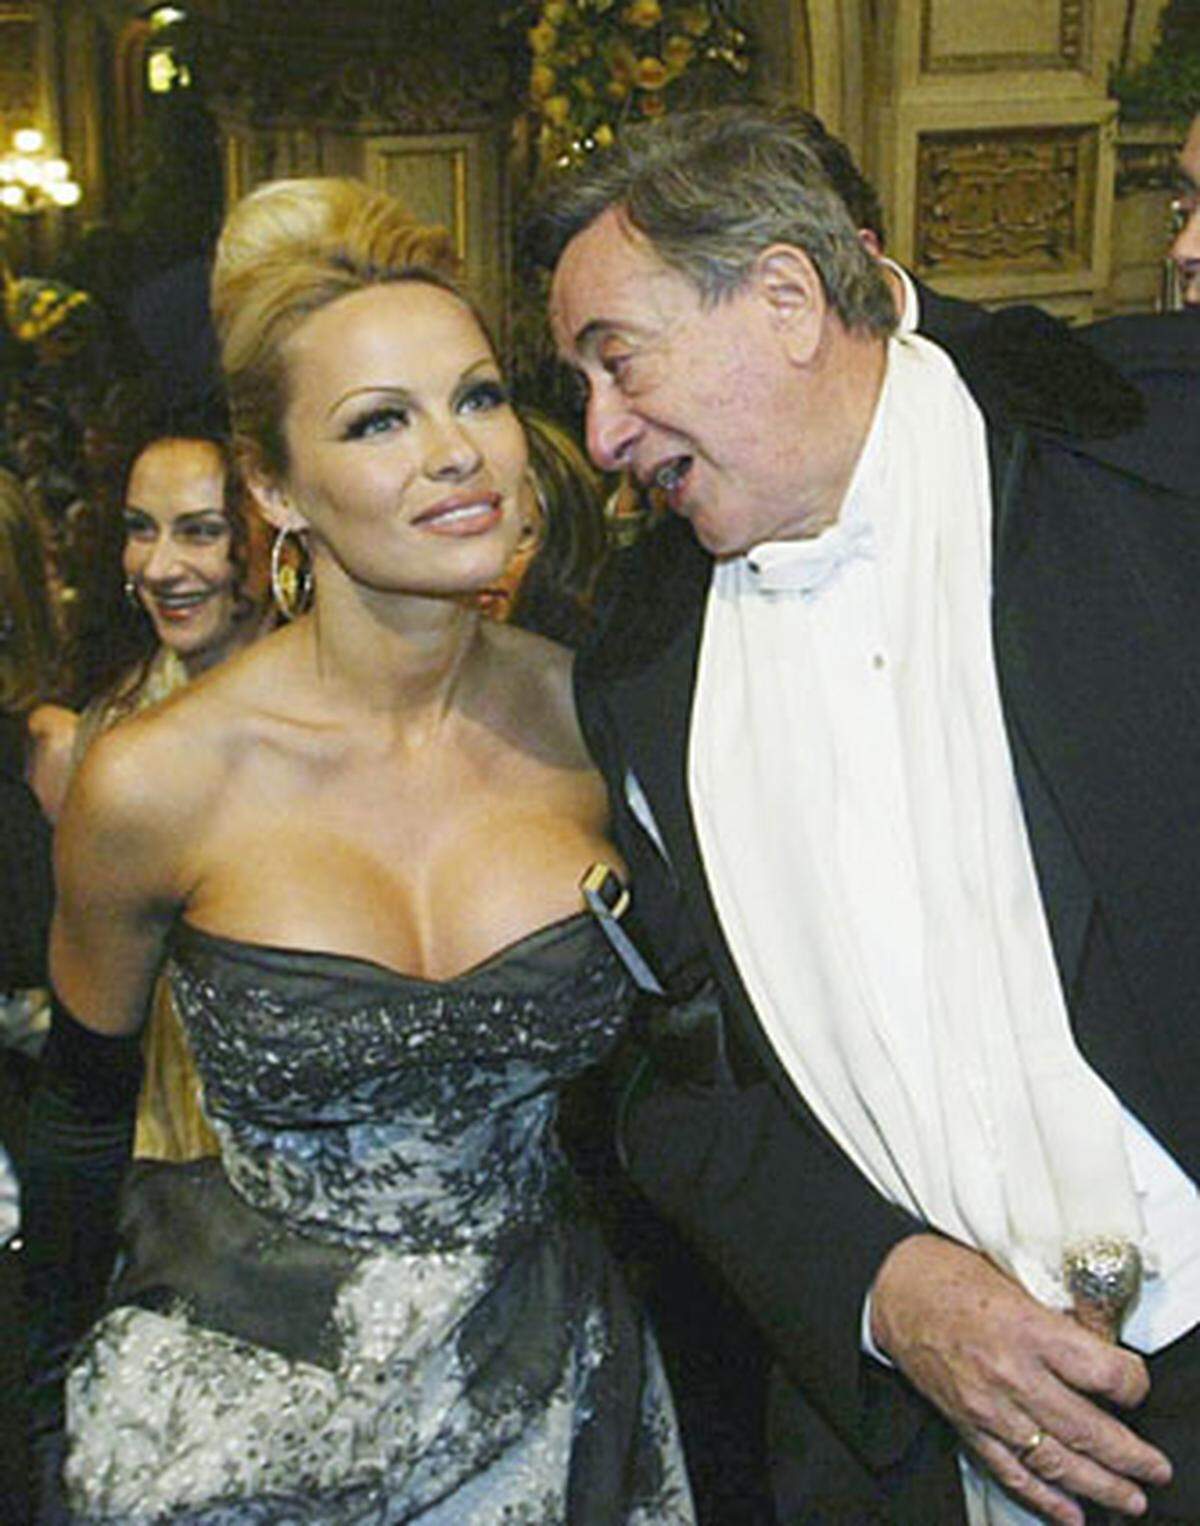 Ungewöhnlich wenig Haut zeigt diese kesse Begleitung des Jahres 2003. Pamela Anderson sollte allerdings nicht die einzige Nixe am Opernball bleiben.